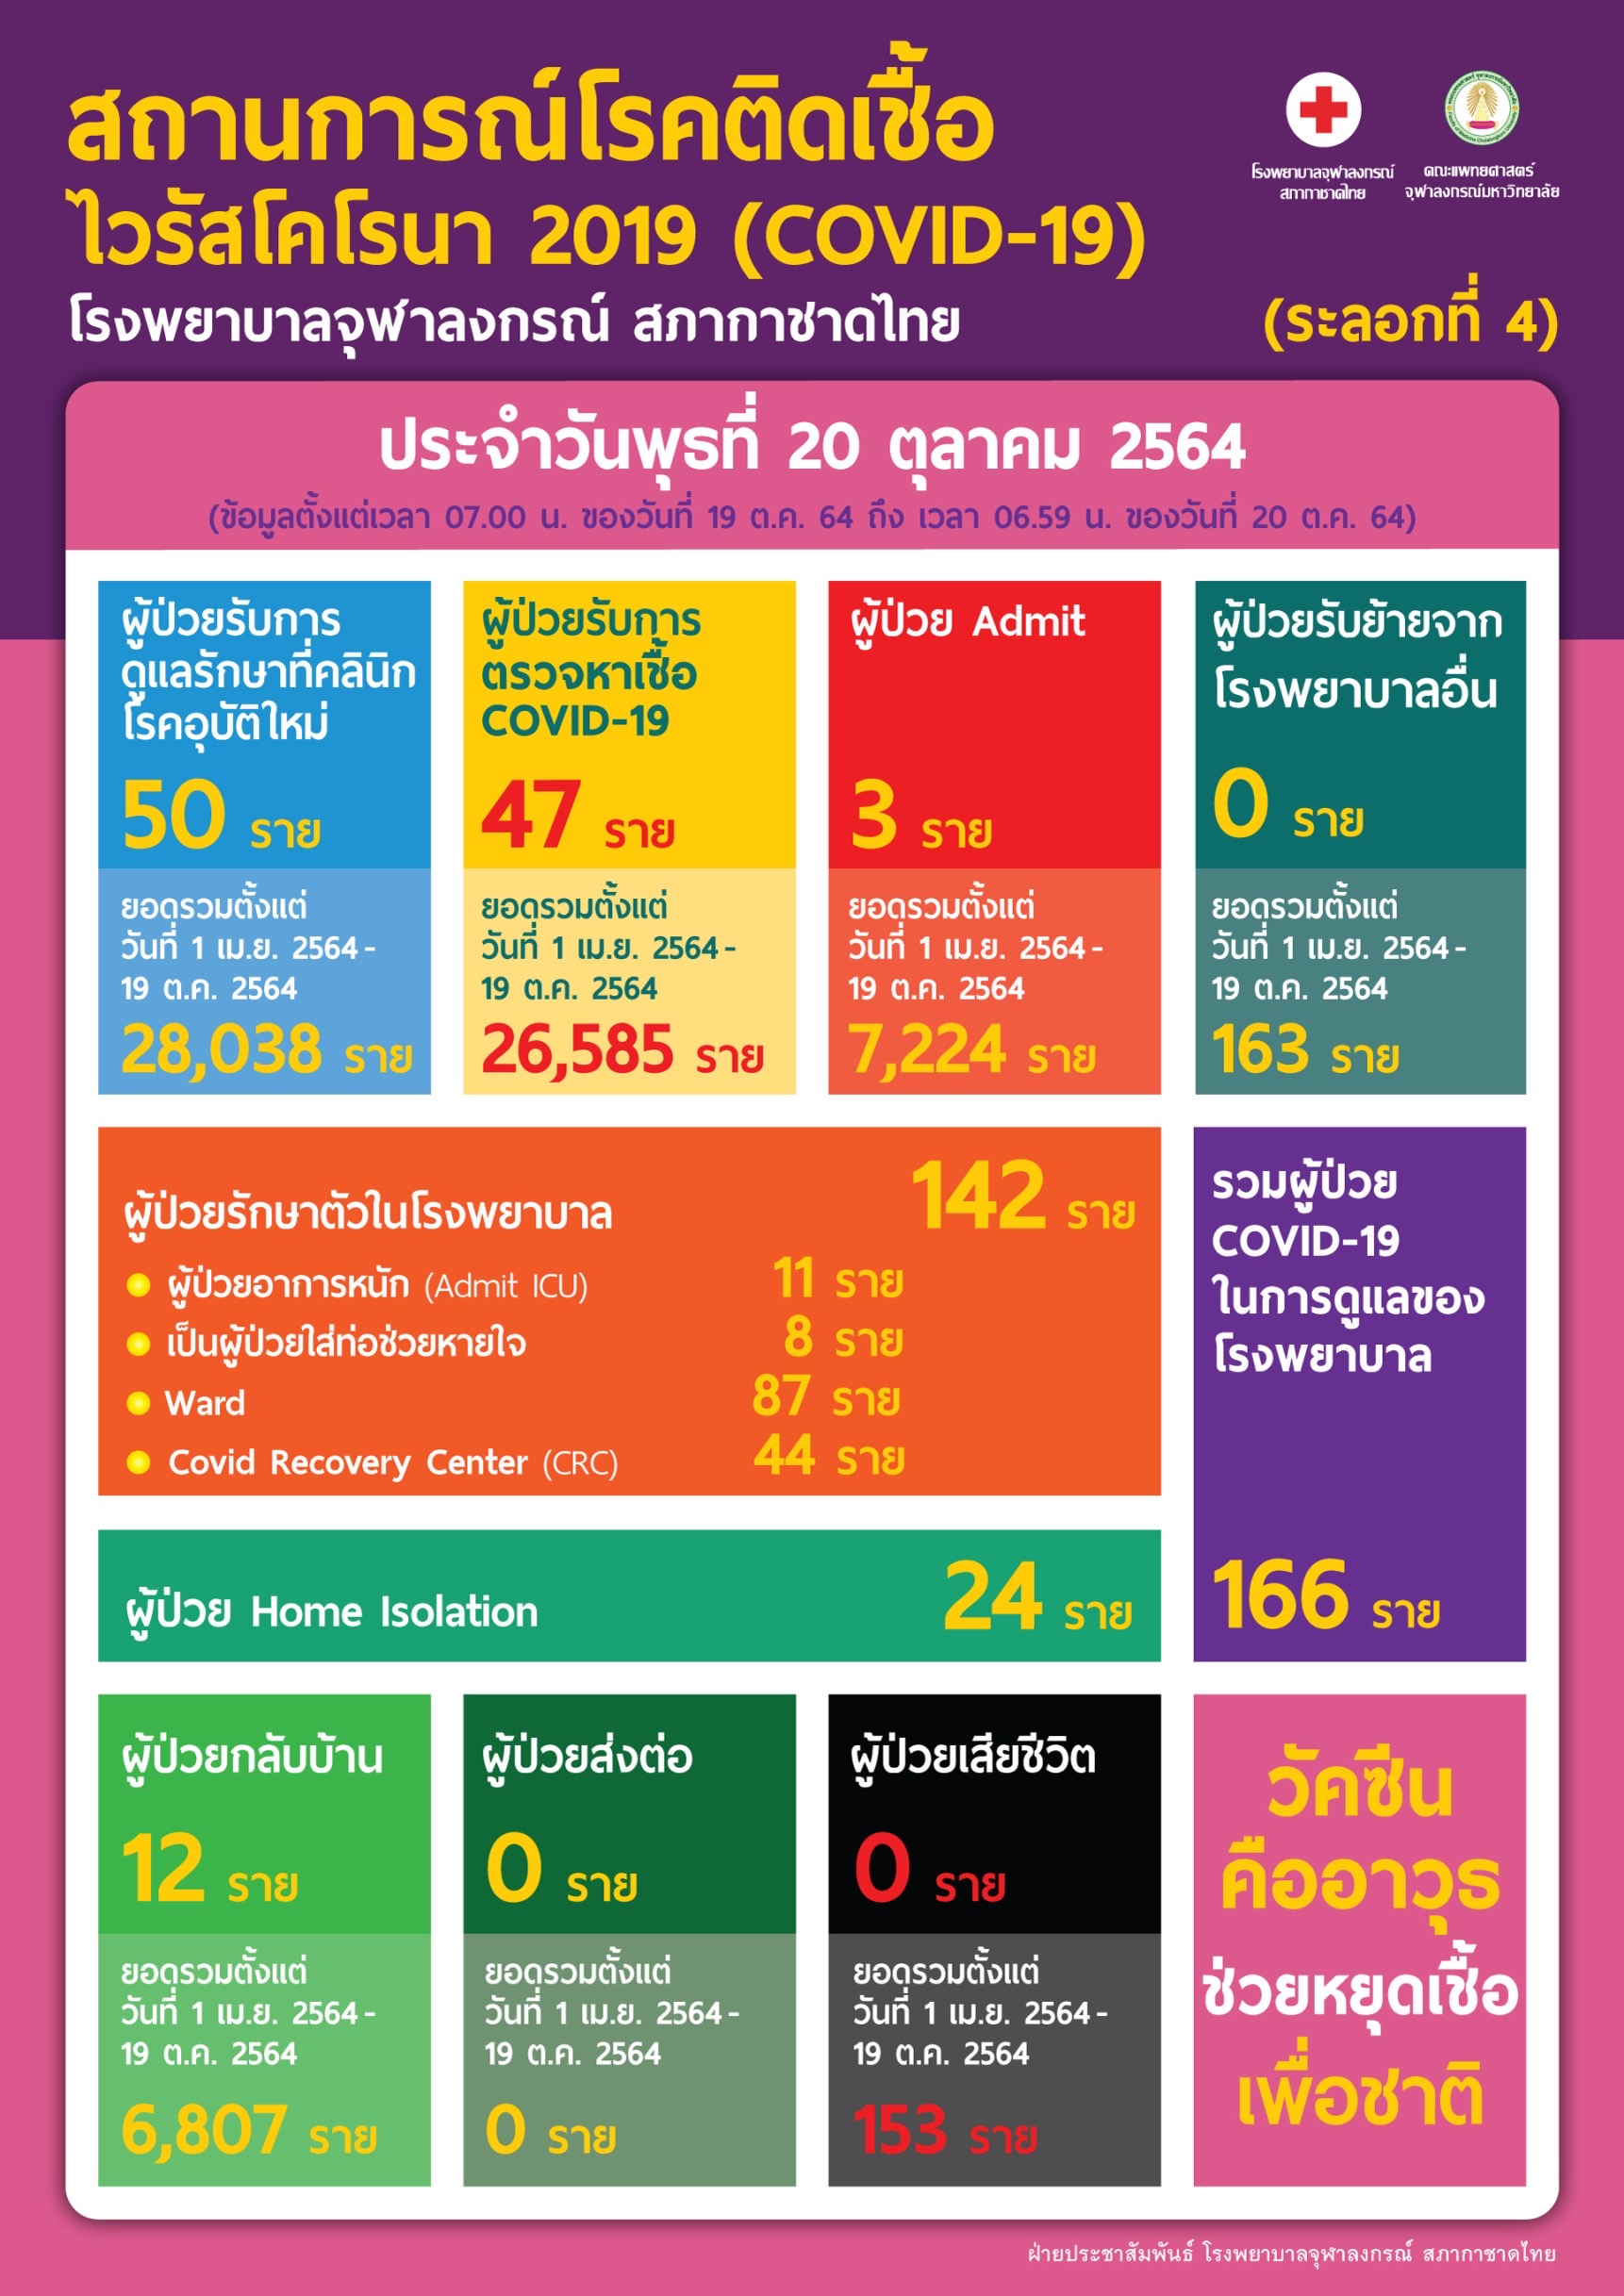 สถานการณ์โรคติดเชื้อไวรัสโคโรนา 2019 (COVID-19) (ระลอกที่ 4) โรงพยาบาลจุฬาลงกรณ์ สภากาชาดไทย ประจำวันพุธที่ 20 ตุลาคม 2564